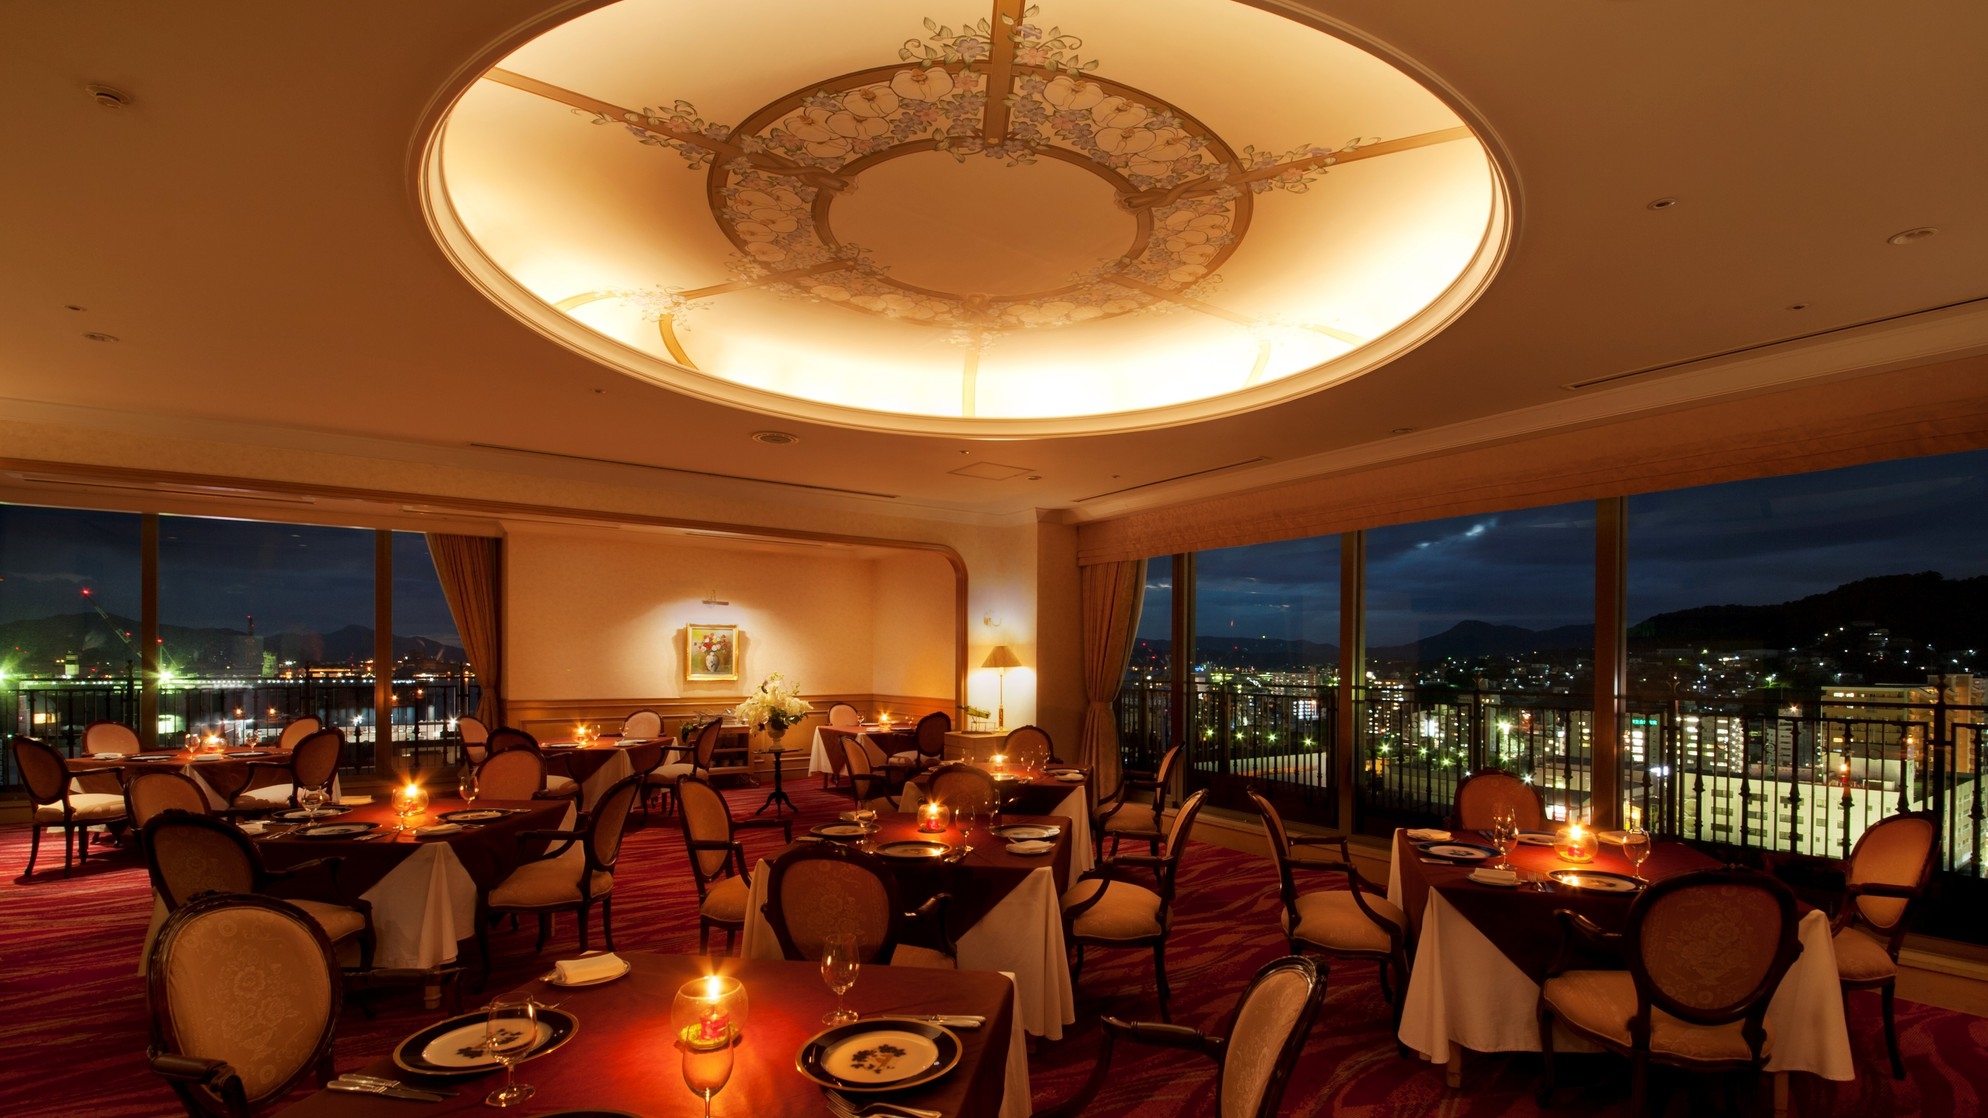 【２食付】〈プレミアムフロア〉ホテル最上階フレンチレストラン「ベッセ・ボワール」 フルコースディナー